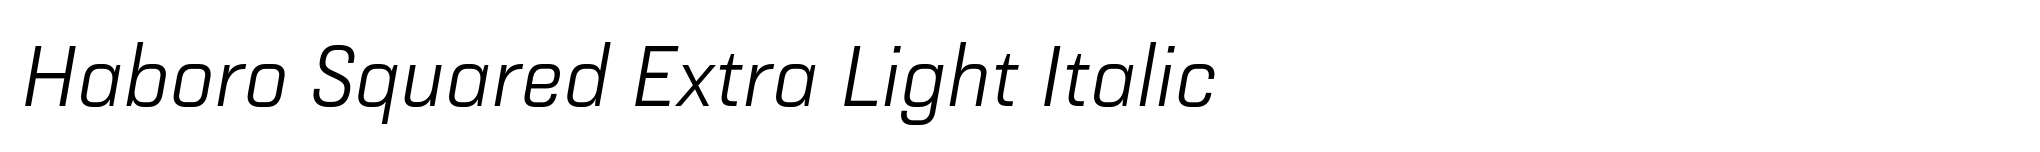 Haboro Squared Extra Light Italic image